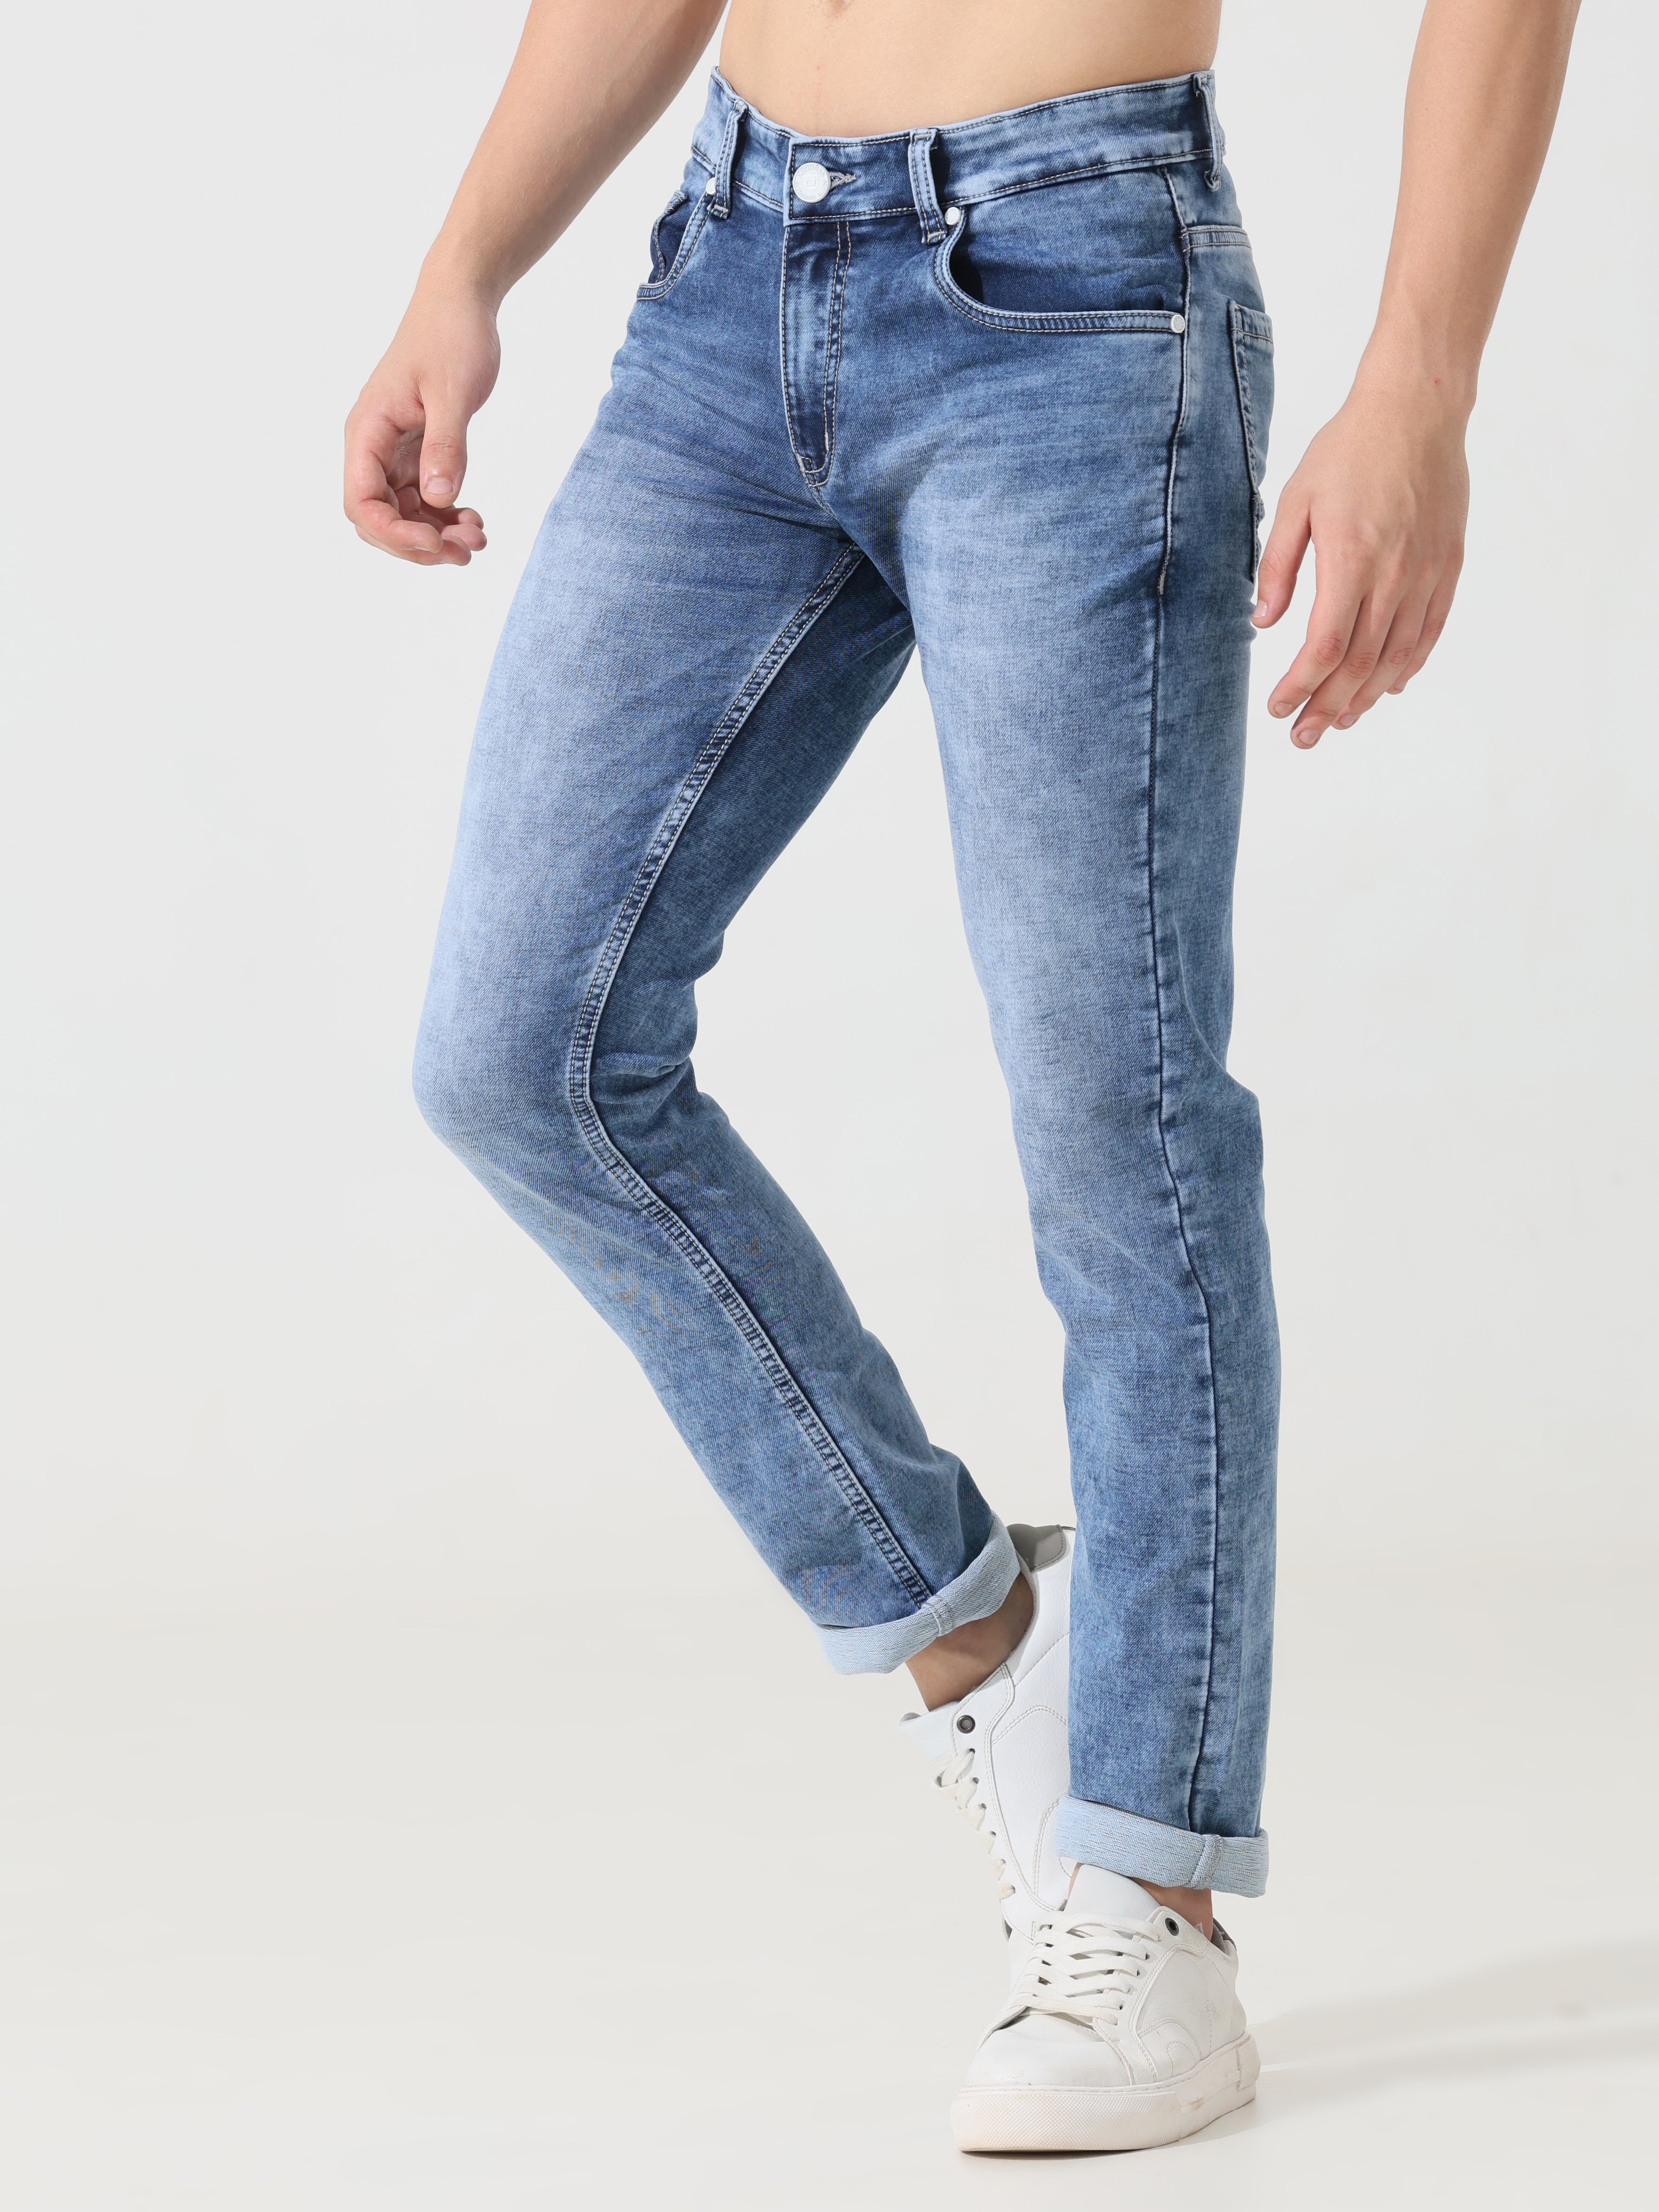 Buy Men Blue Light Slim Fit Jeans Online - 746381 | Louis Philippe